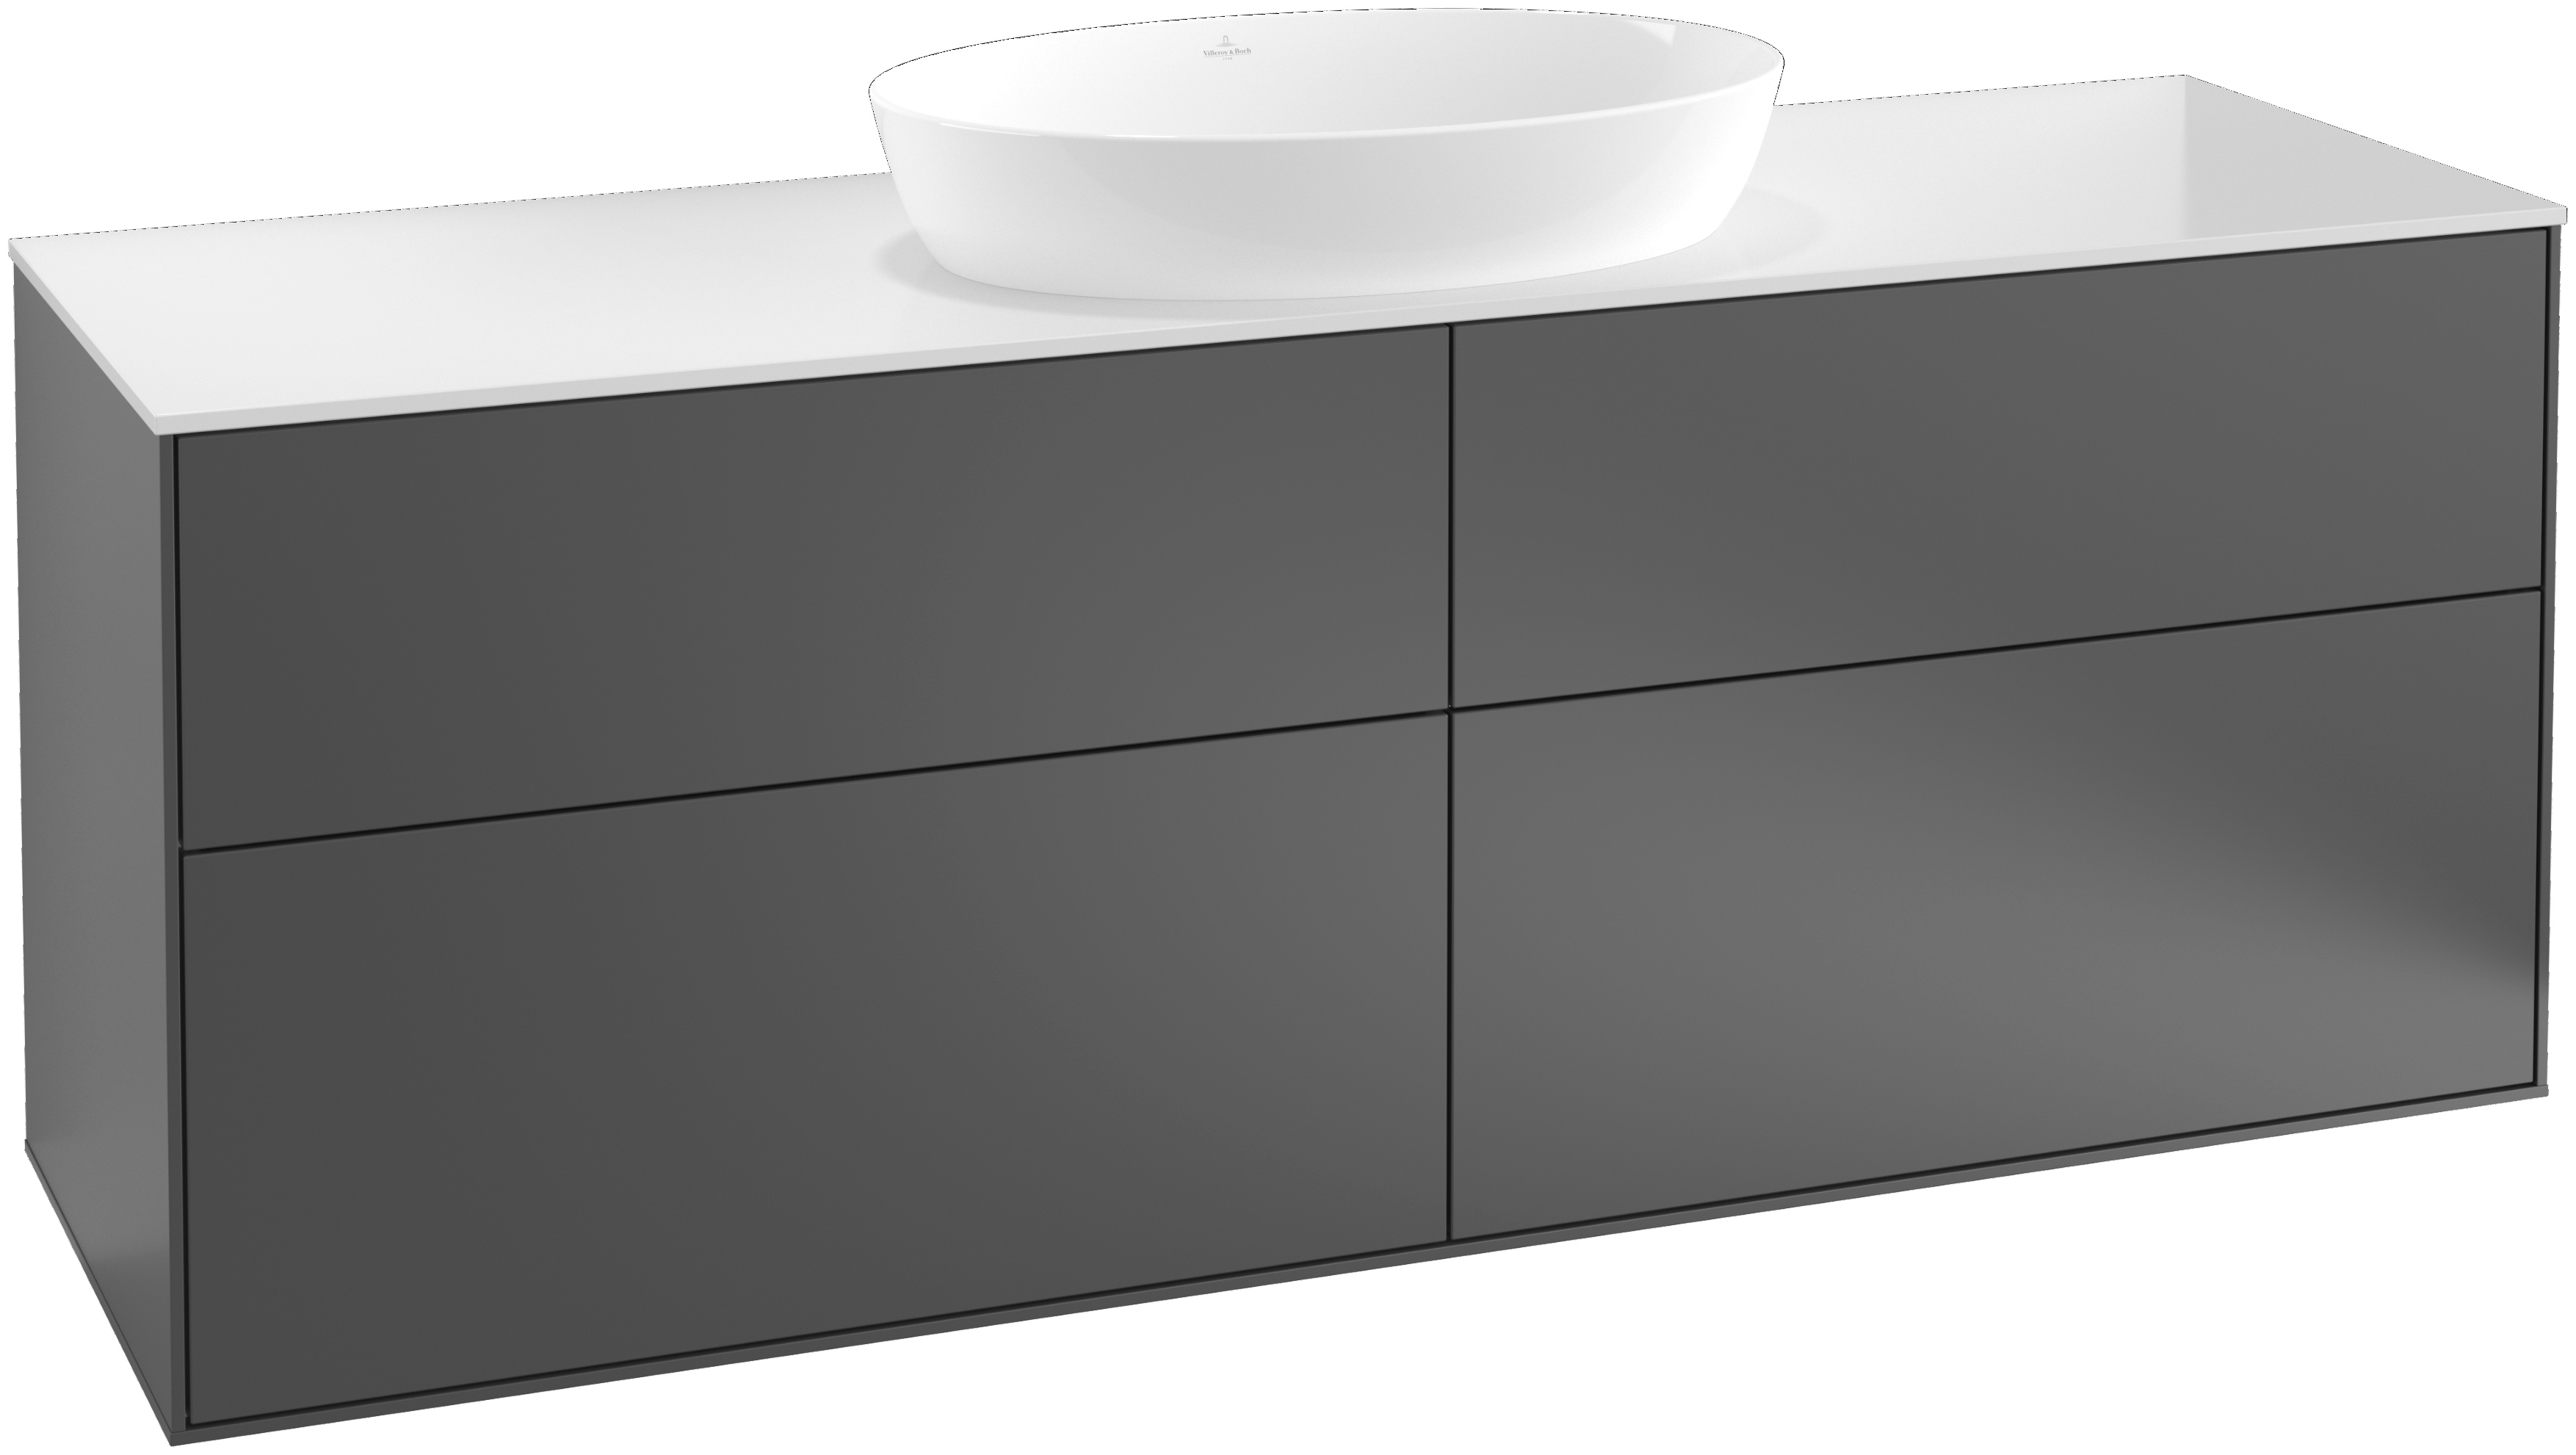 Villeroy & Boch Waschtischunterschrank „Finion“ für Schrankwaschtisch 160 × 60,3 × 50,1 cm 4 Schubladen, für Waschtischposition mittig in mittig